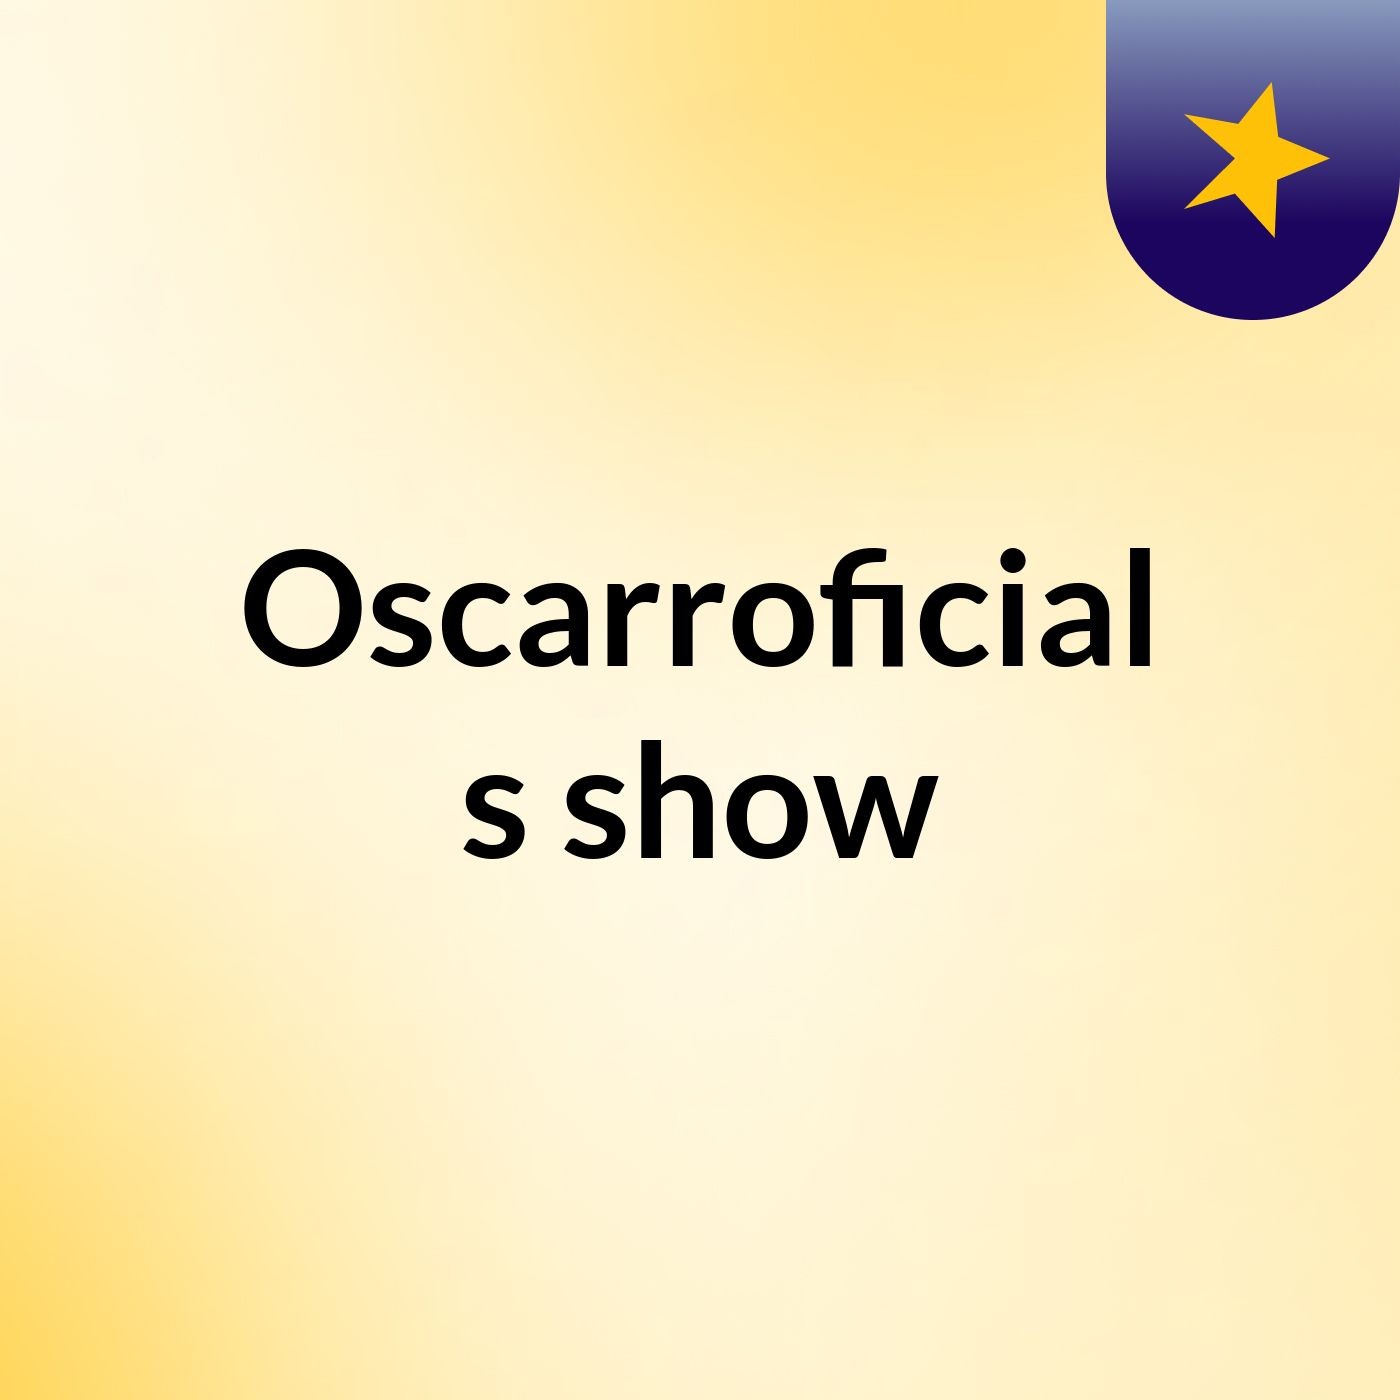 Oscarroficial's show